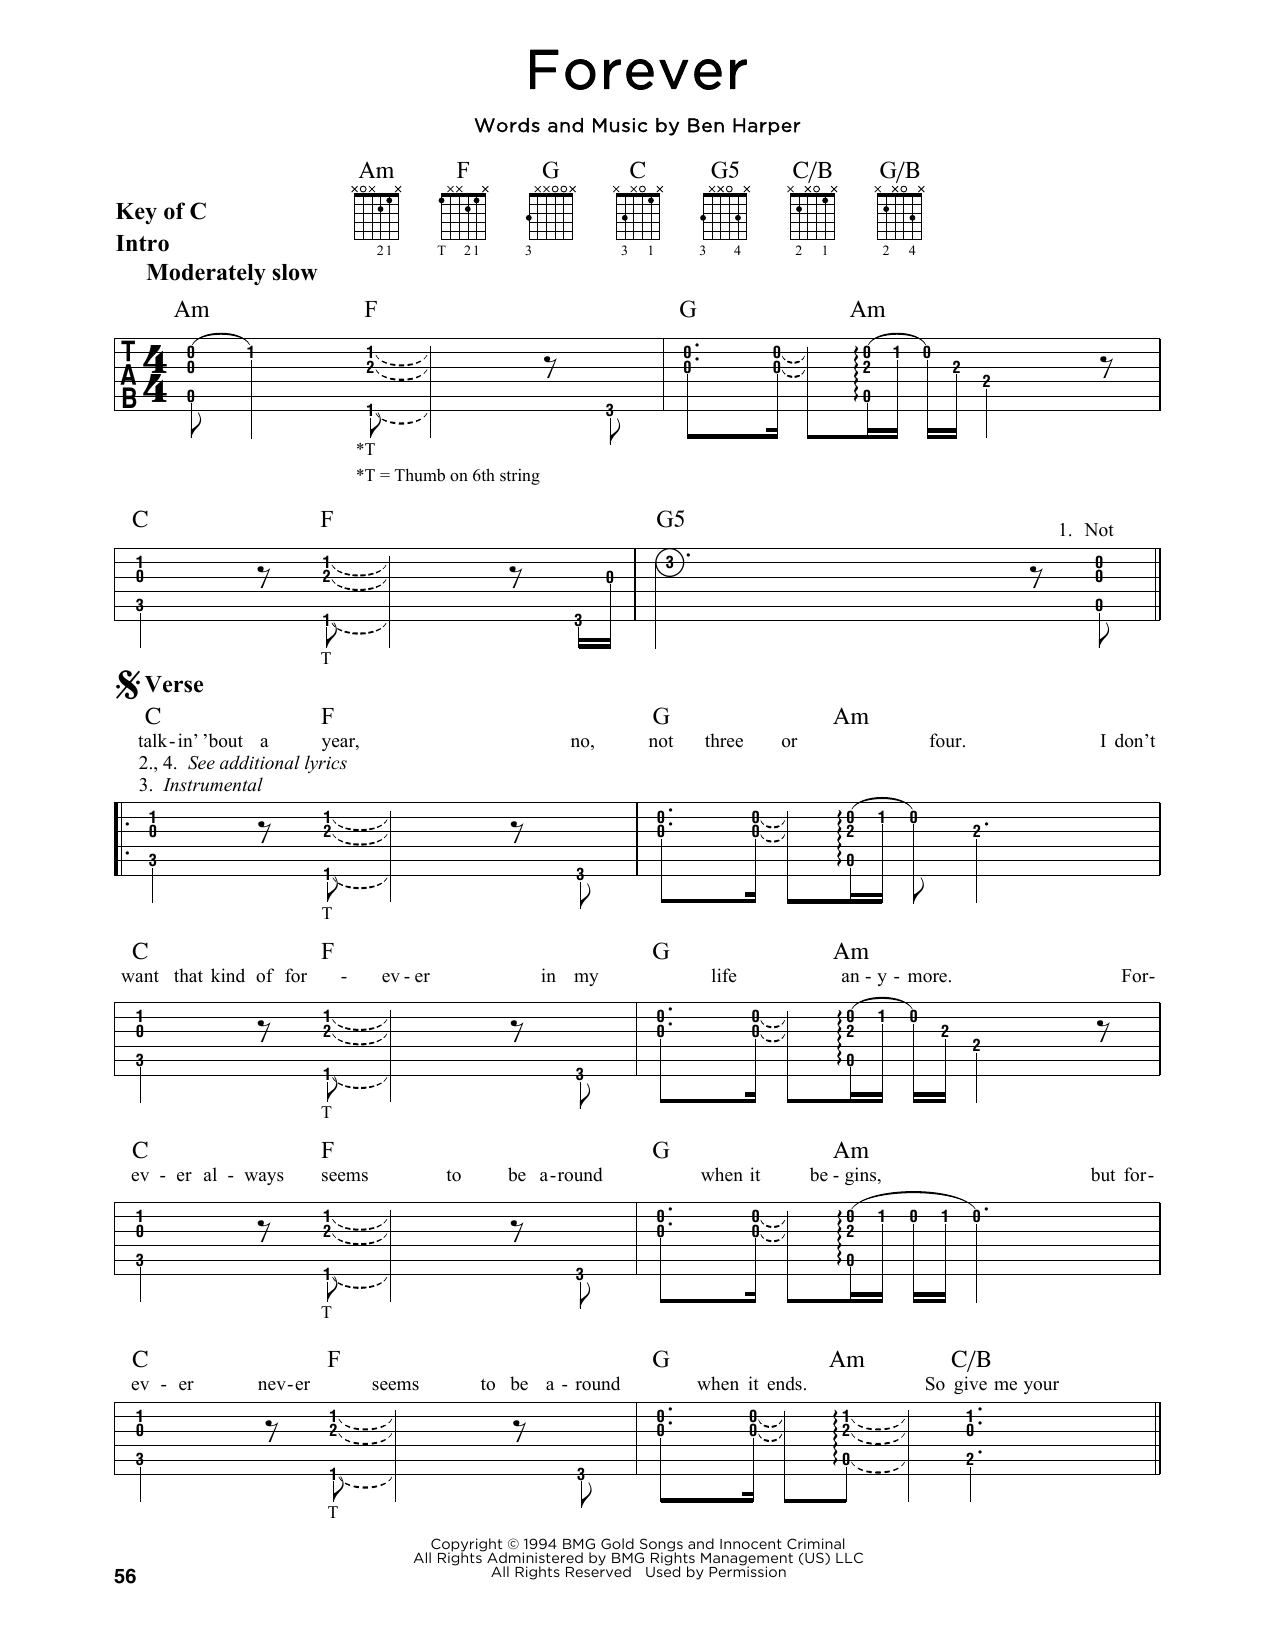 Ben Harper Forever Sheet Music Notes & Chords for Lyrics & Chords - Download or Print PDF